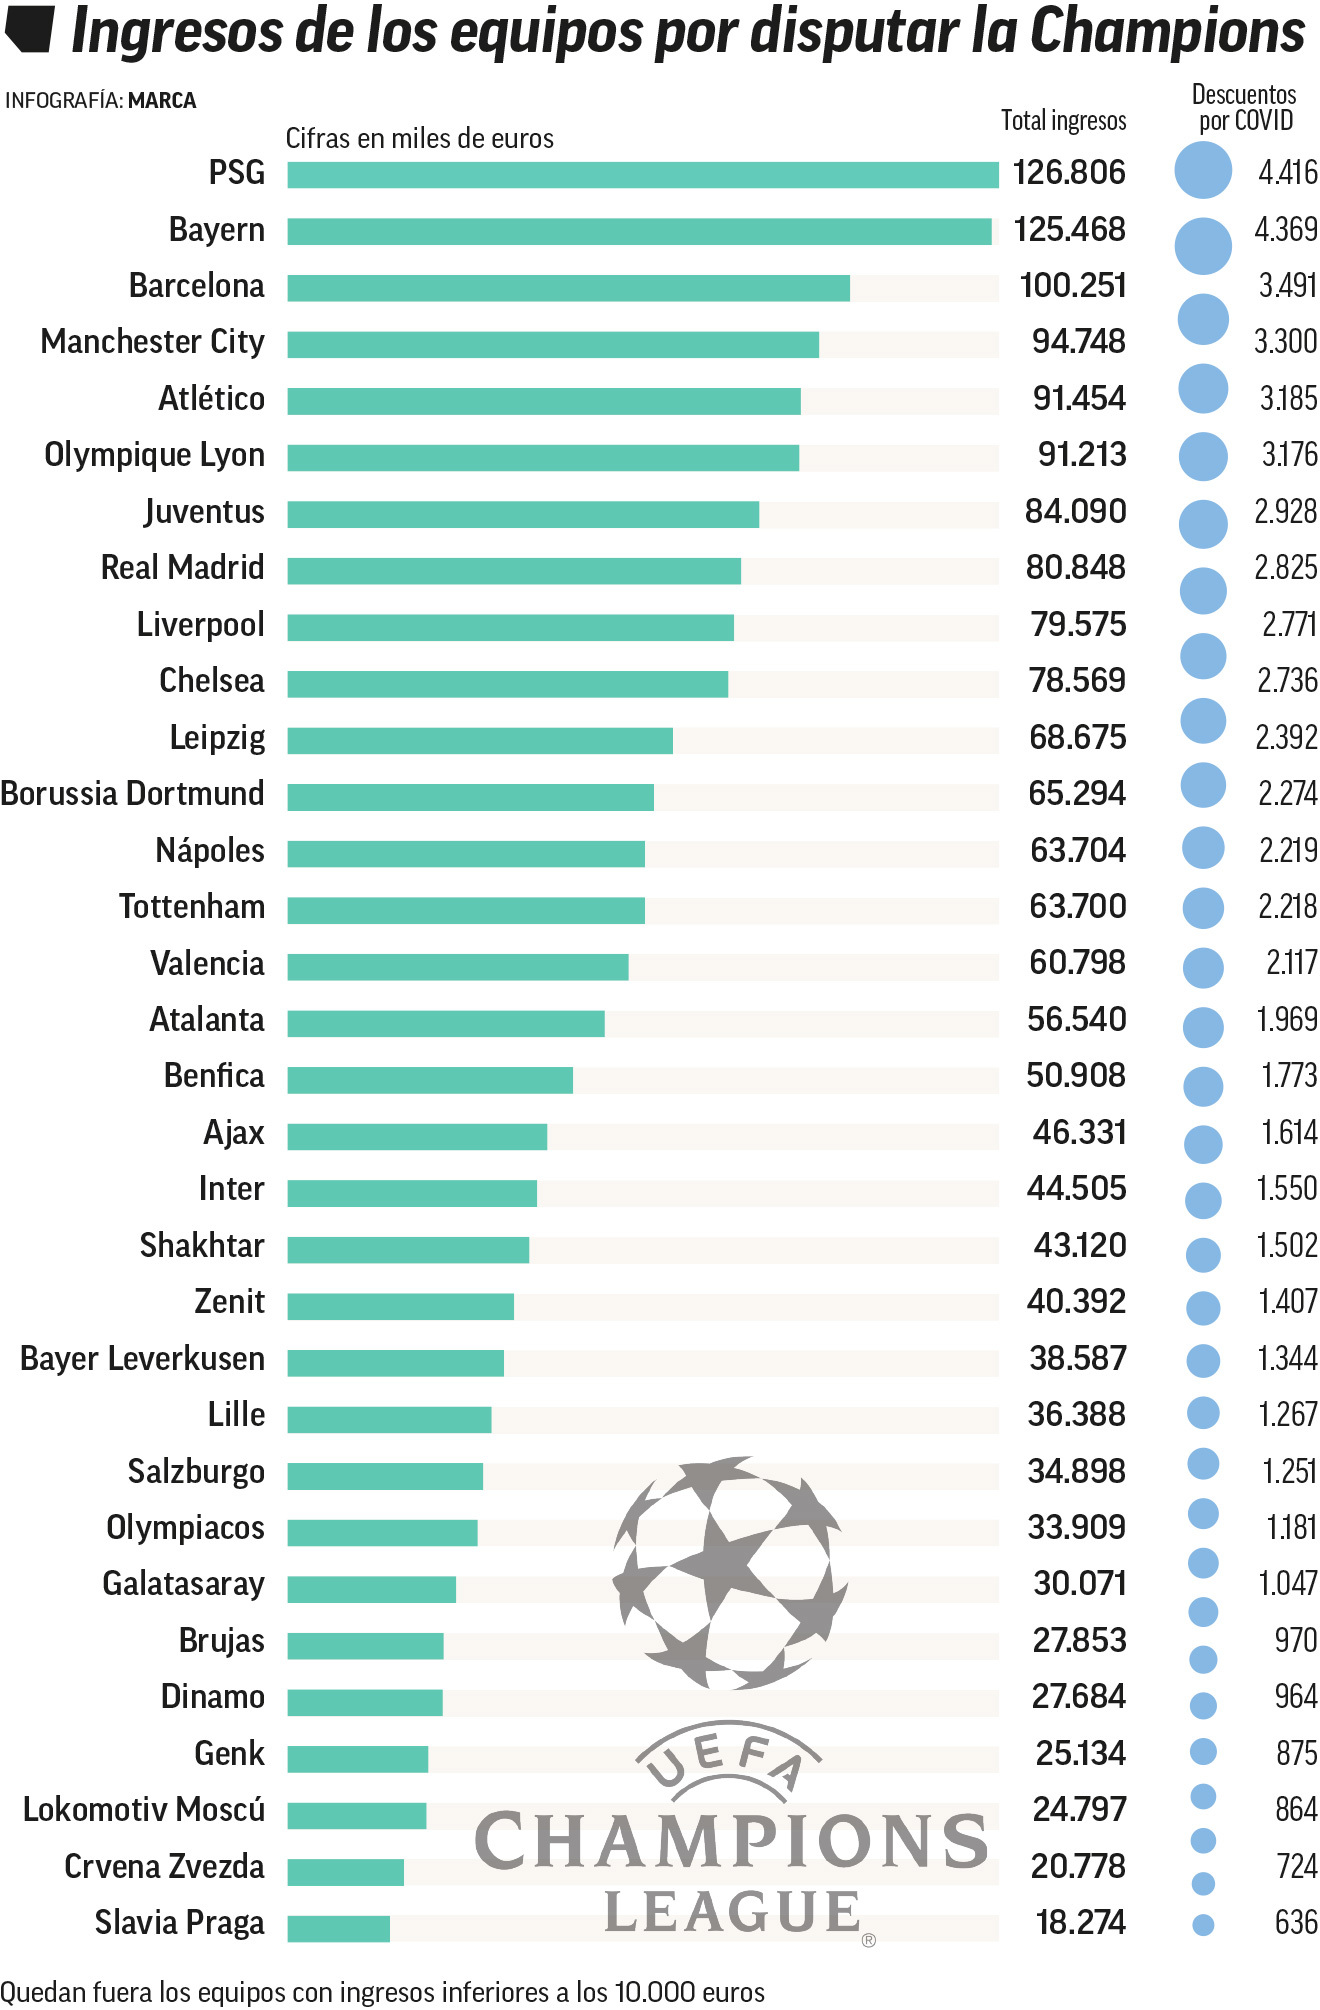 nejlépe vydělávající kluby v Lize mistrů UEFA 2019/20